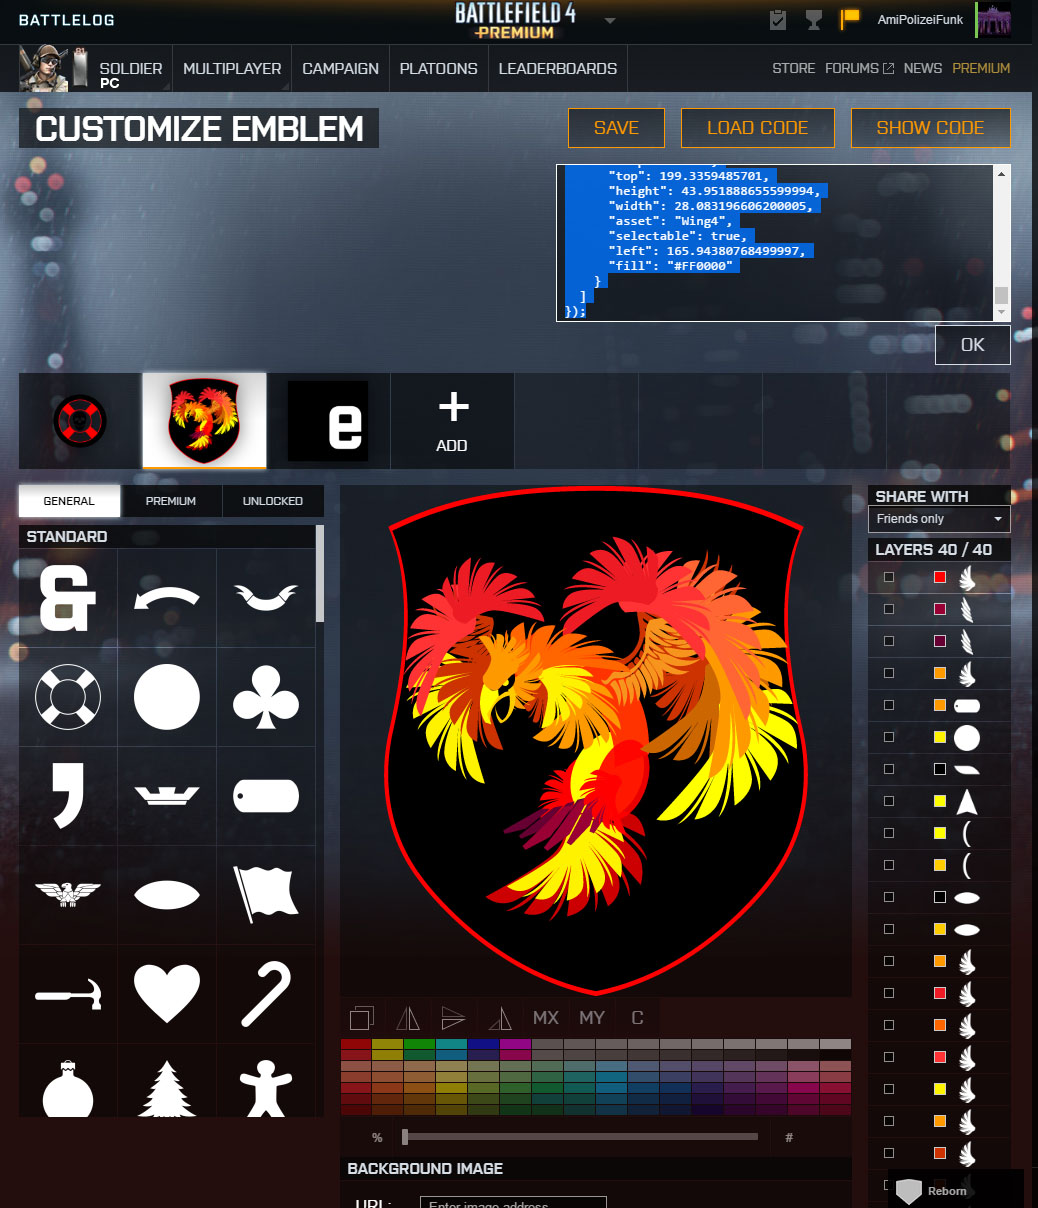 battlefield 4 battlelog - How do I customize my Soldier's Emblem